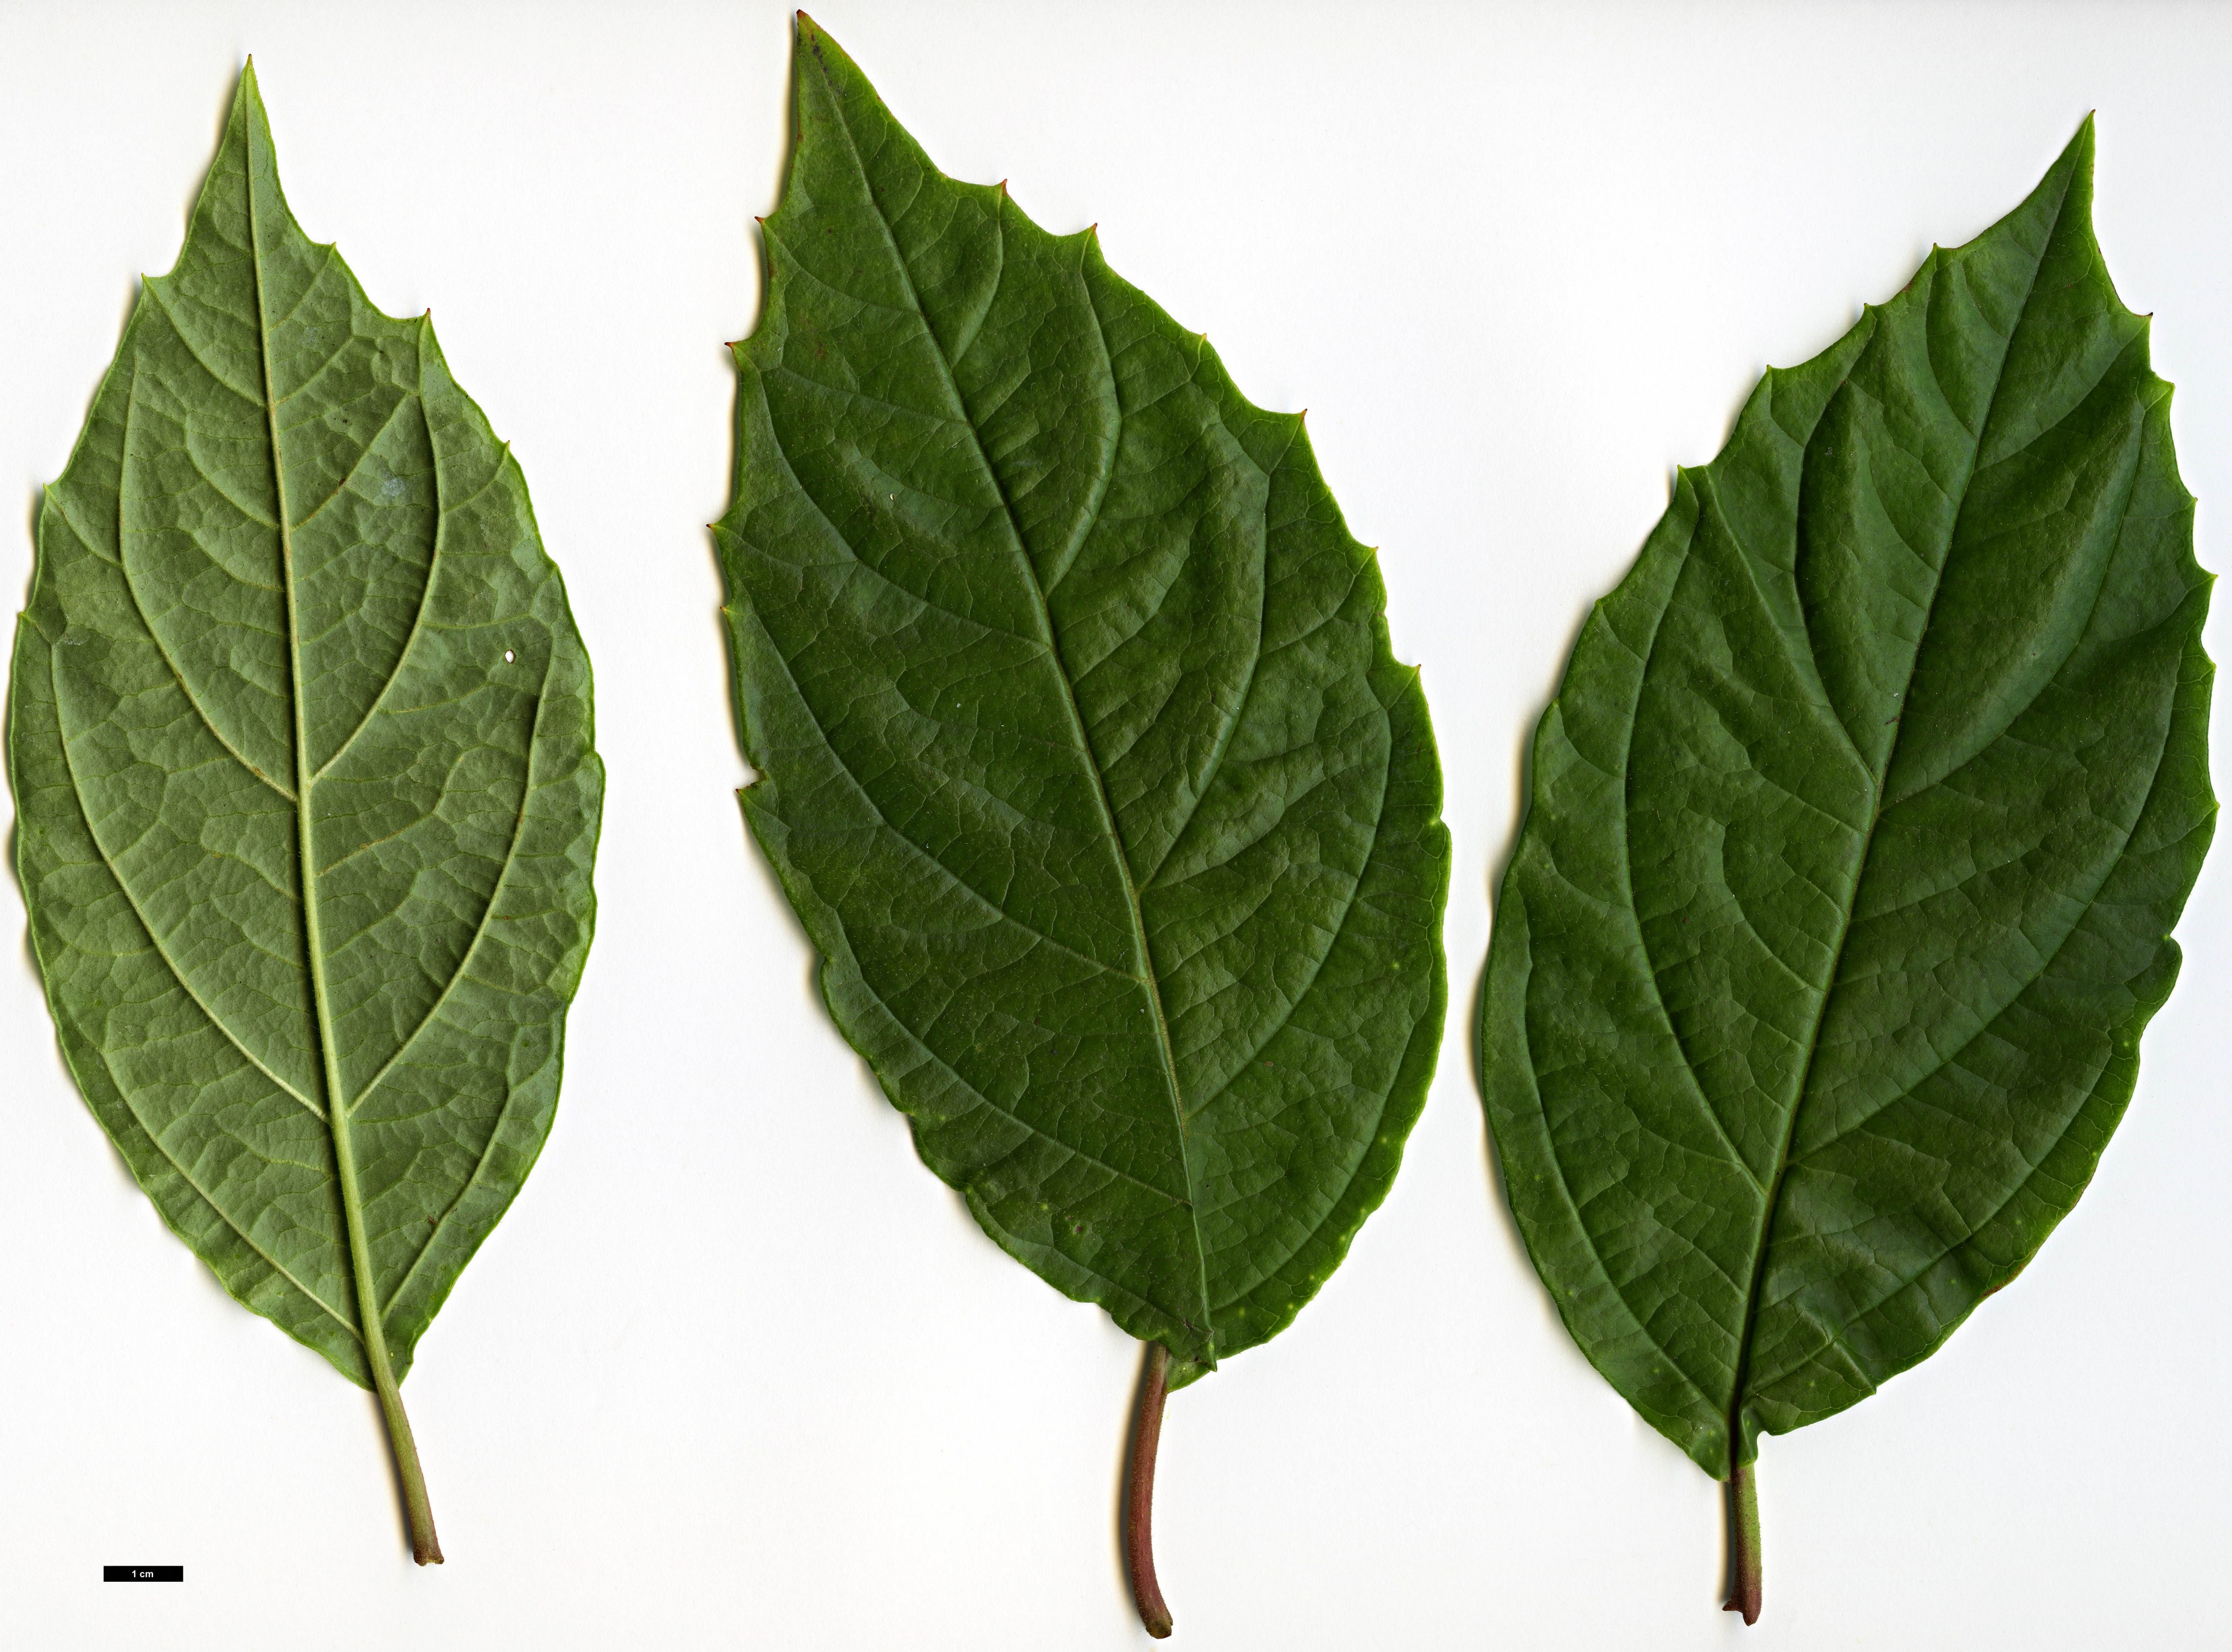 High resolution image: Family: Adoxaceae - Genus: Viburnum - Taxon: ternatum